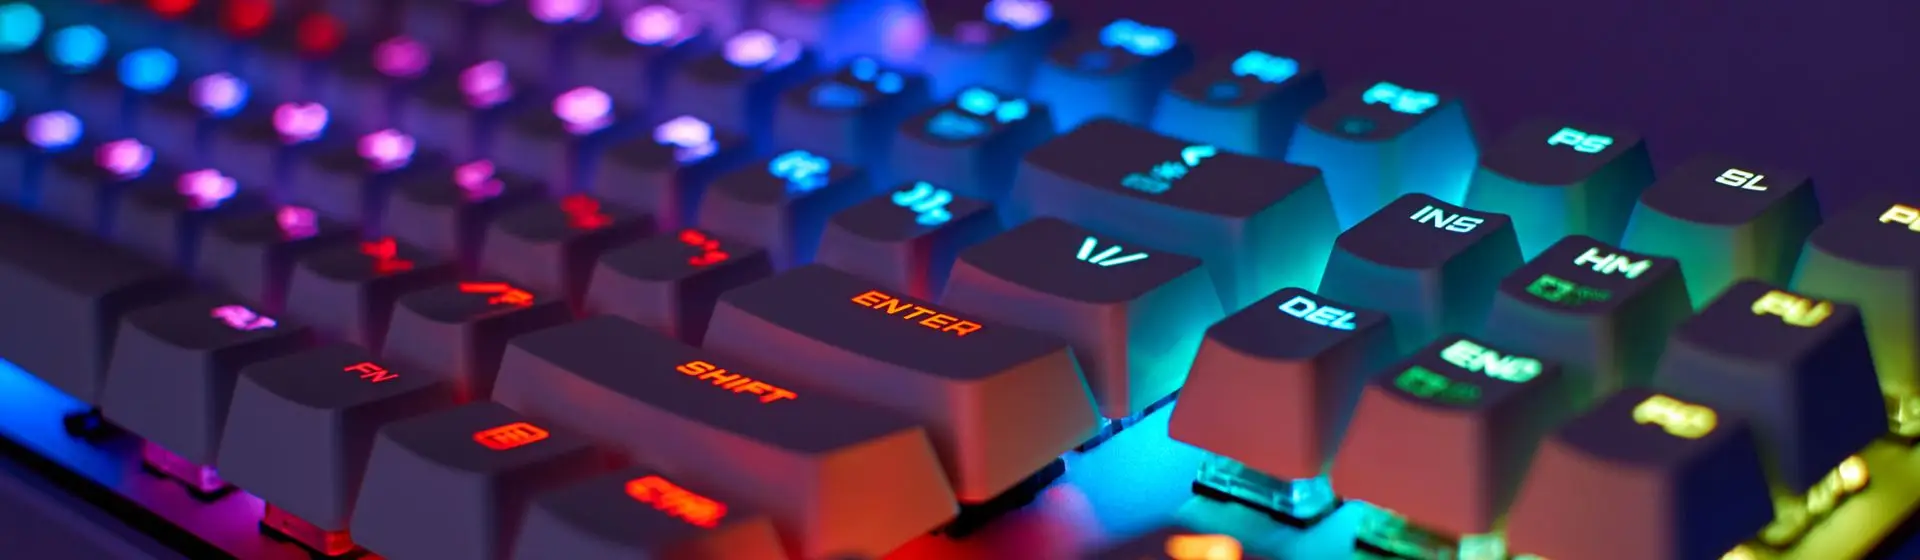 Melhor teclado mecânico em 2022: 10 opções para comprar